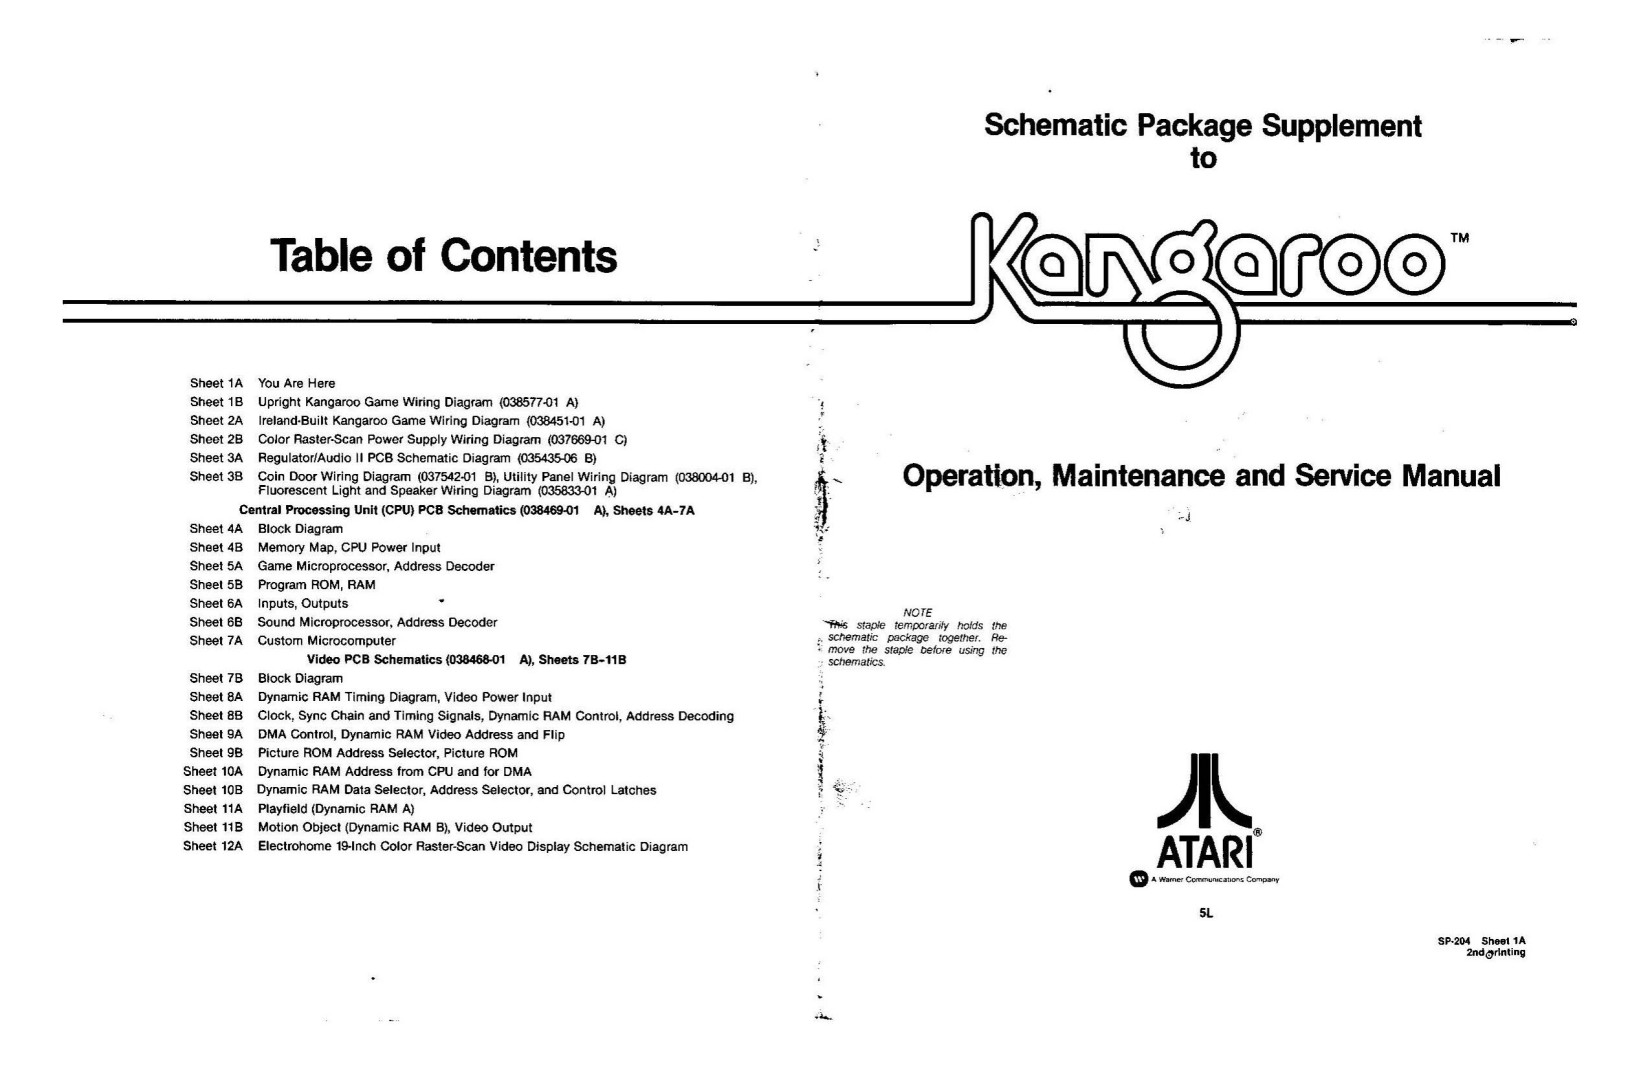 Kangaroo (SP-204 2nd Printing) (Schematic Package) (U)